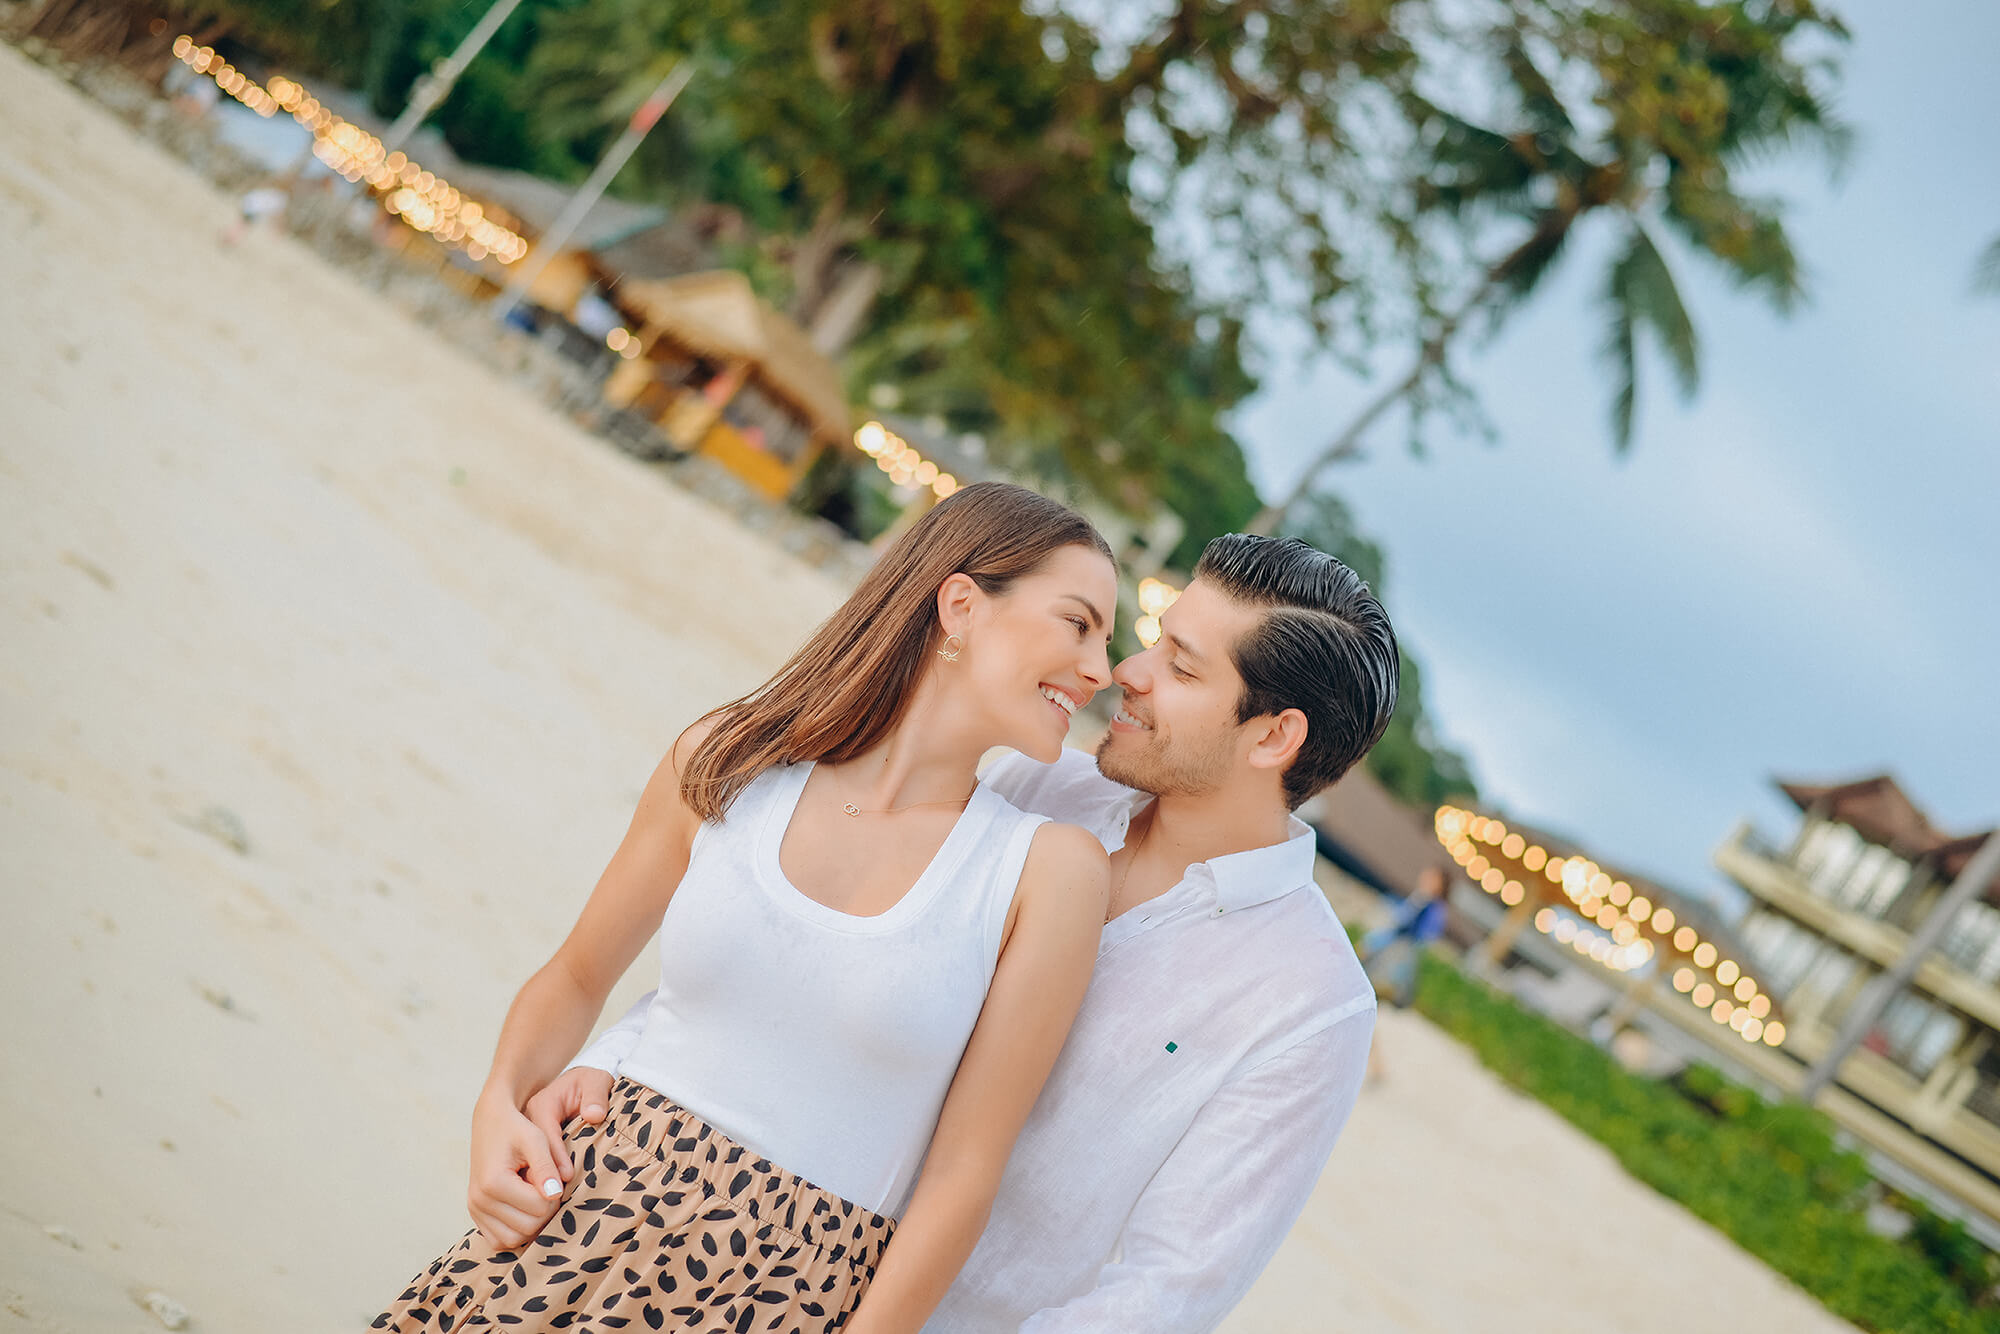 Romantic honeymoon photoshoot in Phuket